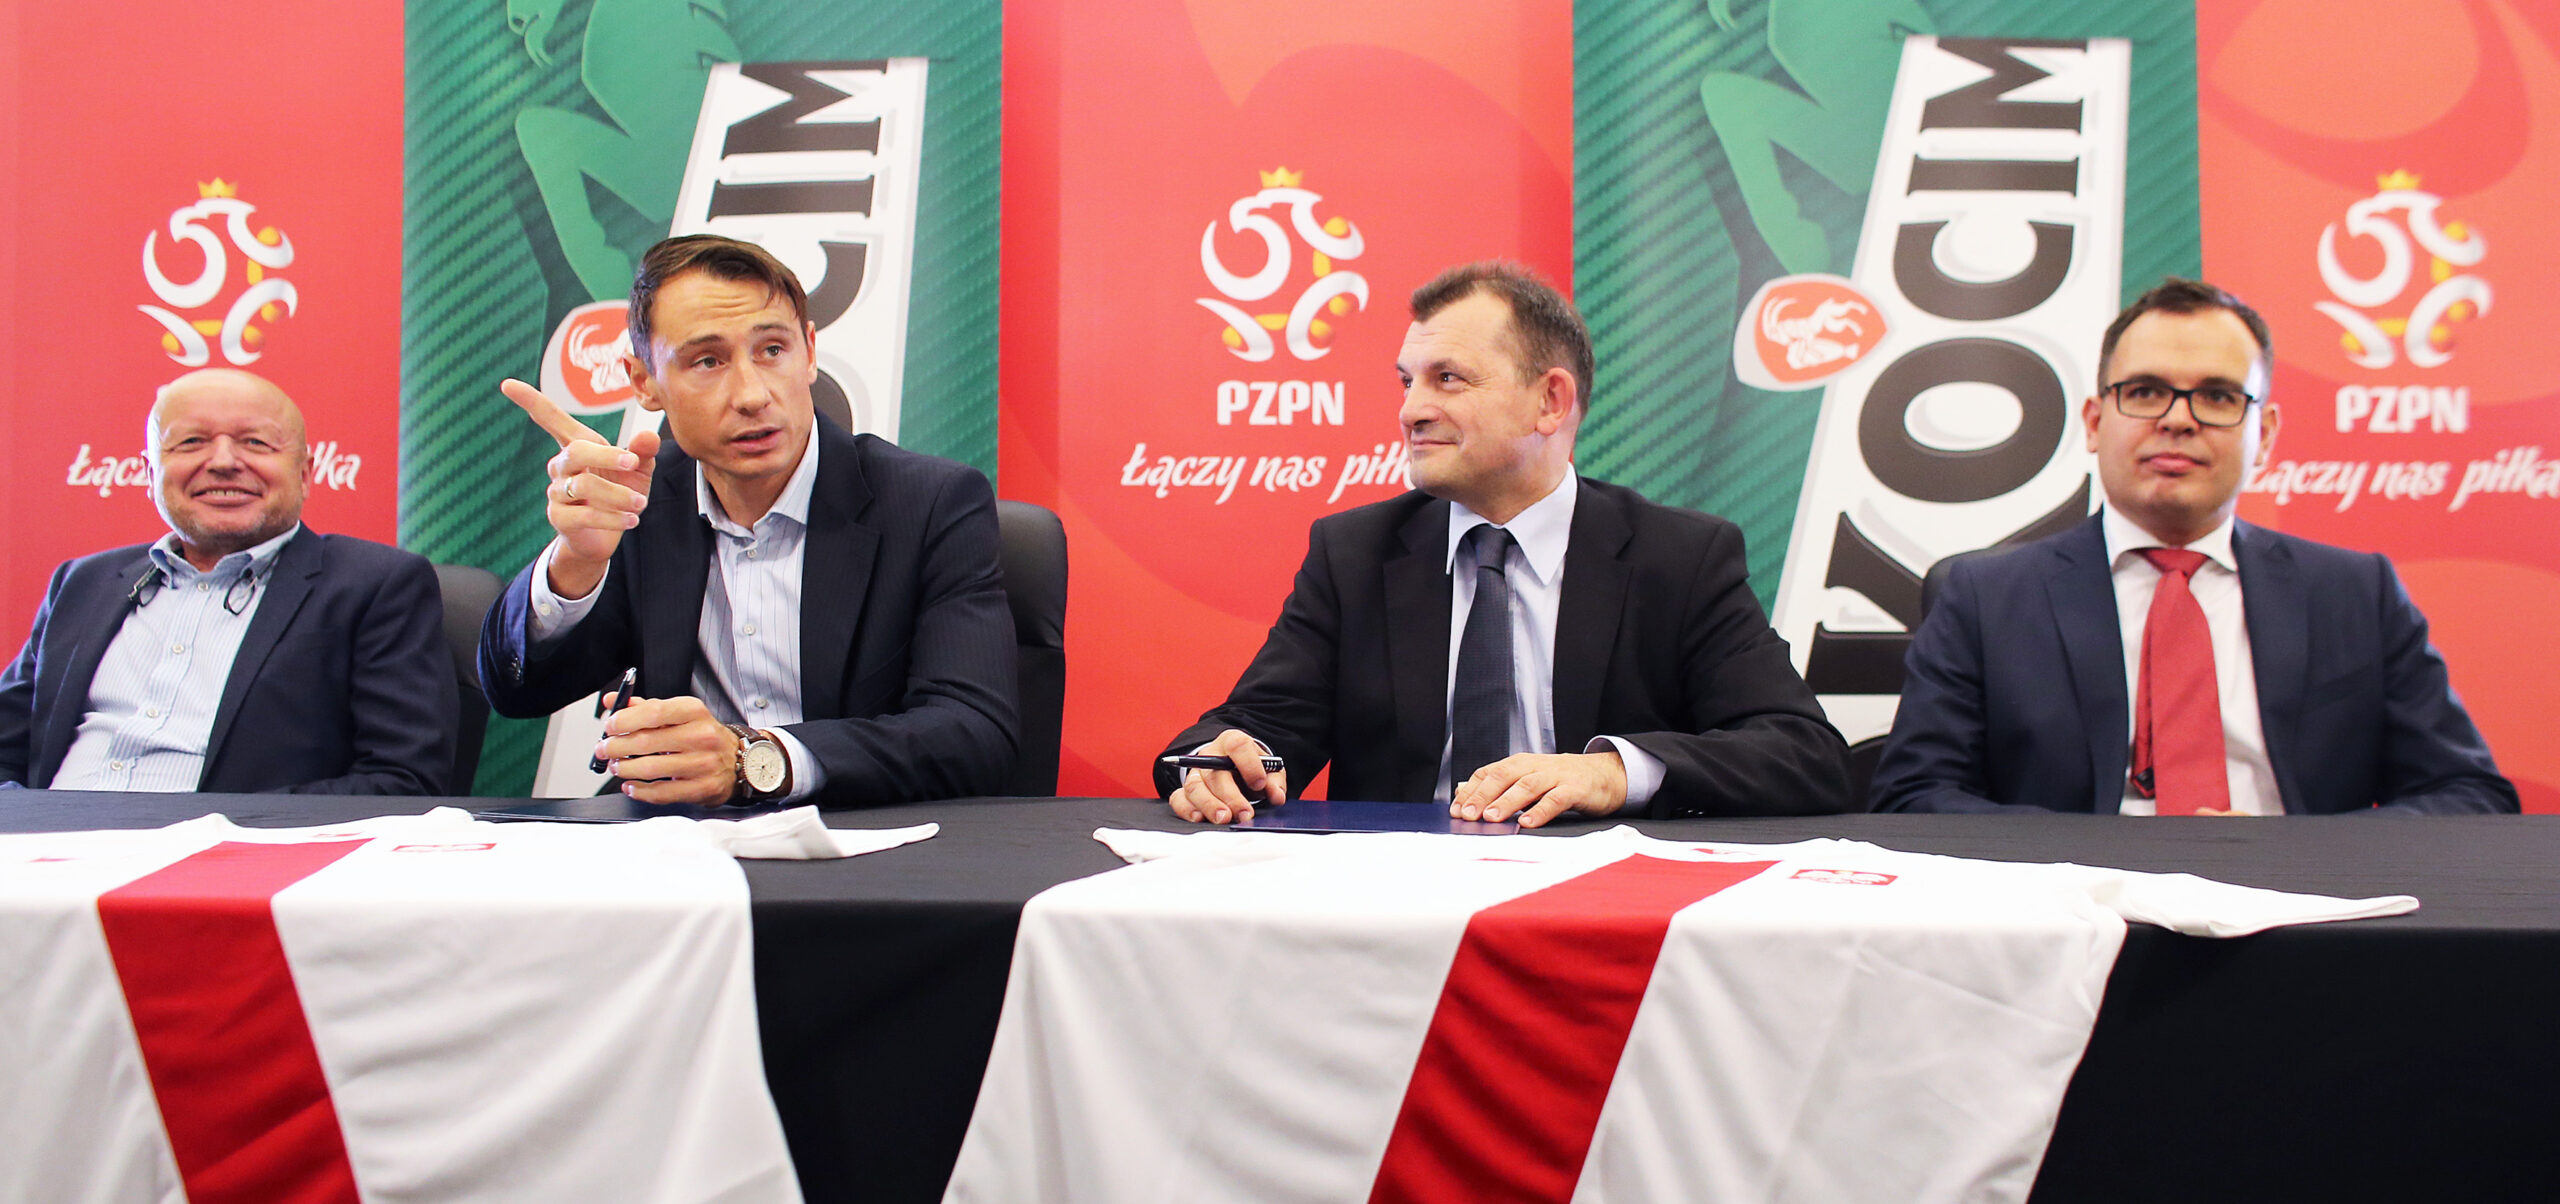 Nowy sponsor Piłkarskiej Reprezentacji Polski piłka nożna Mediarun Com Okocim scaled